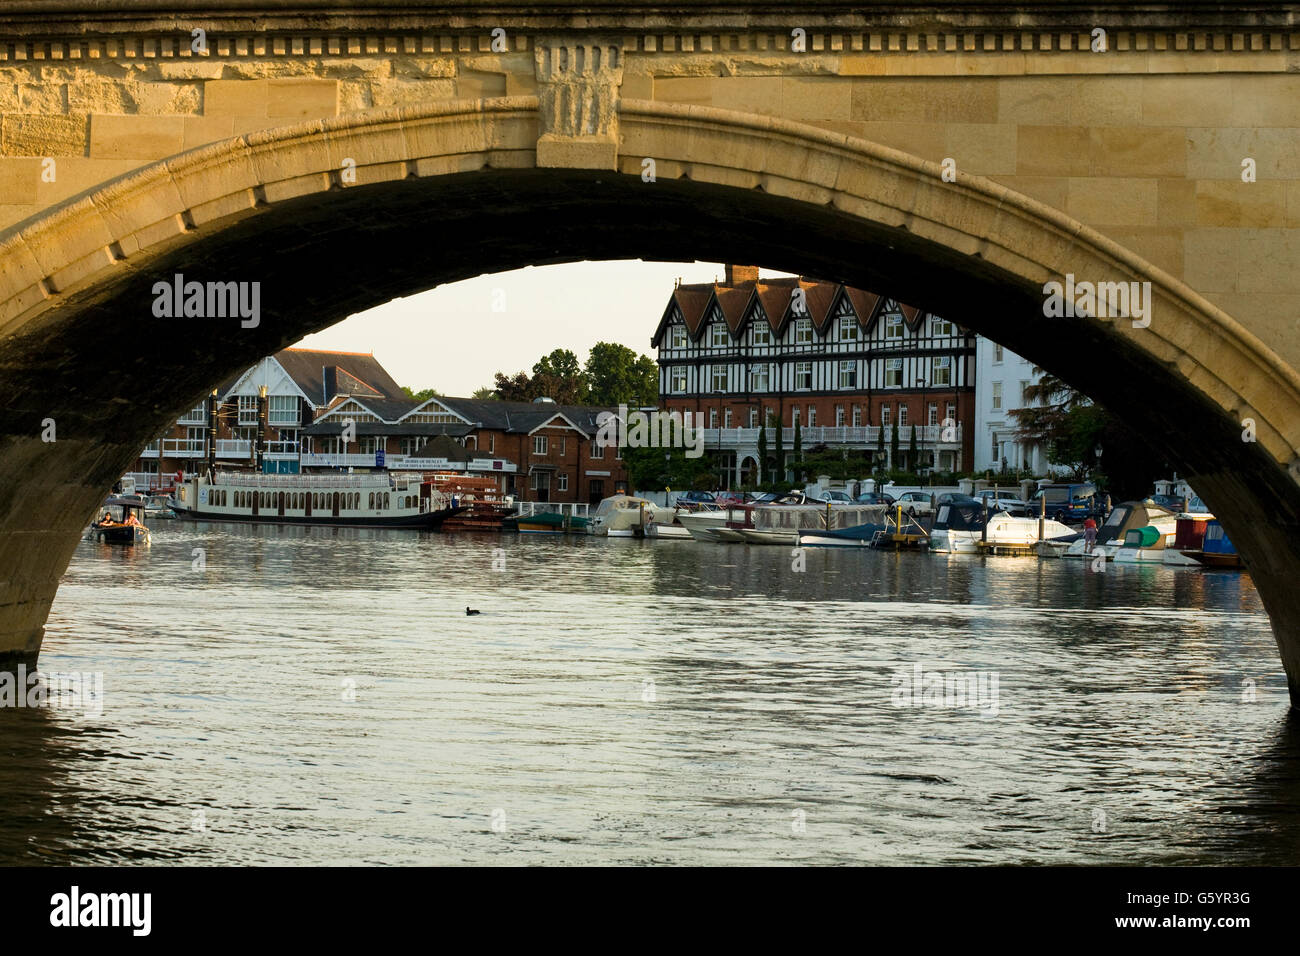 Blick durch den Bogen des Henley Brücke von einem Boot Boote und Gebäude auf der anderen Seite Stockfoto